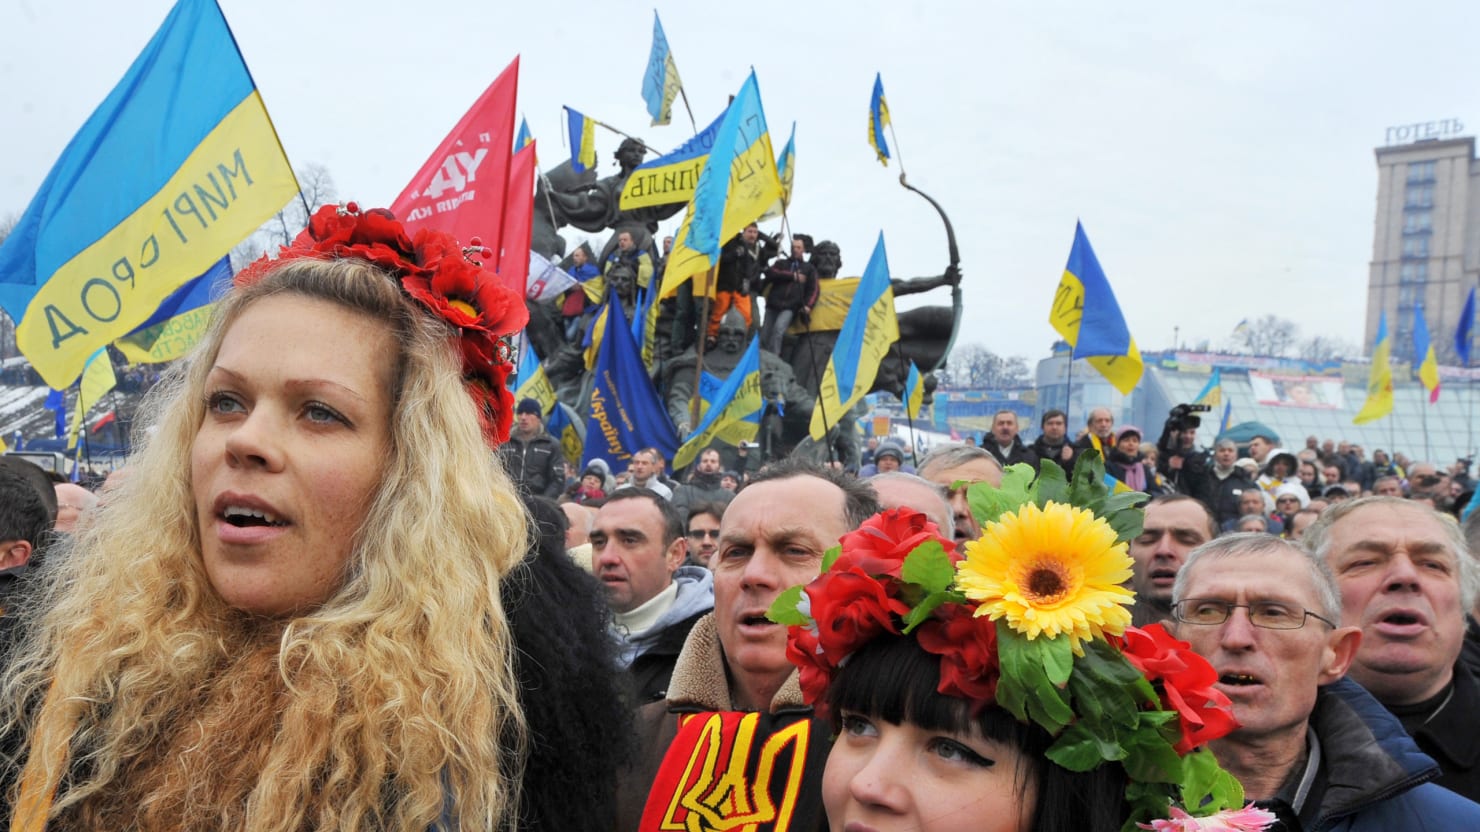 Украинцы про украину